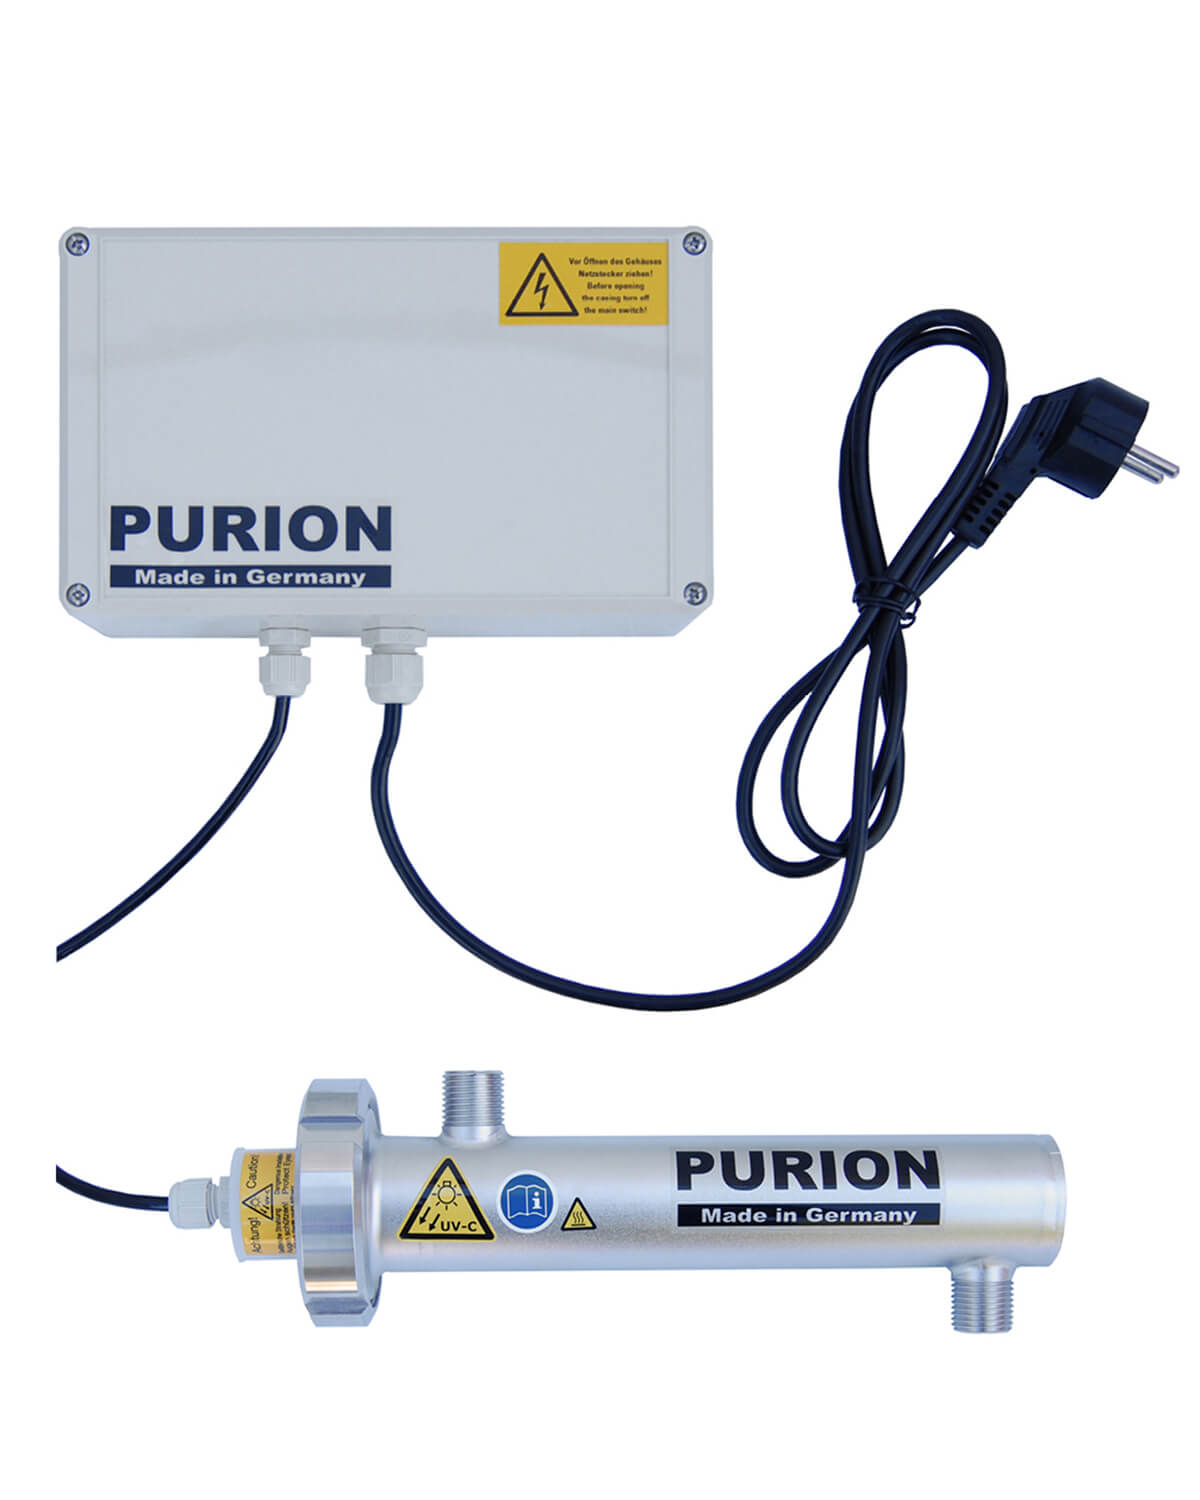 Die PURION 400 110 - 240 V AC Basic der PURION GmbH ist eine UV-C-Lampe, die entkeimtes Trinkwasser zu Reinigungszwecken bereitstellt.